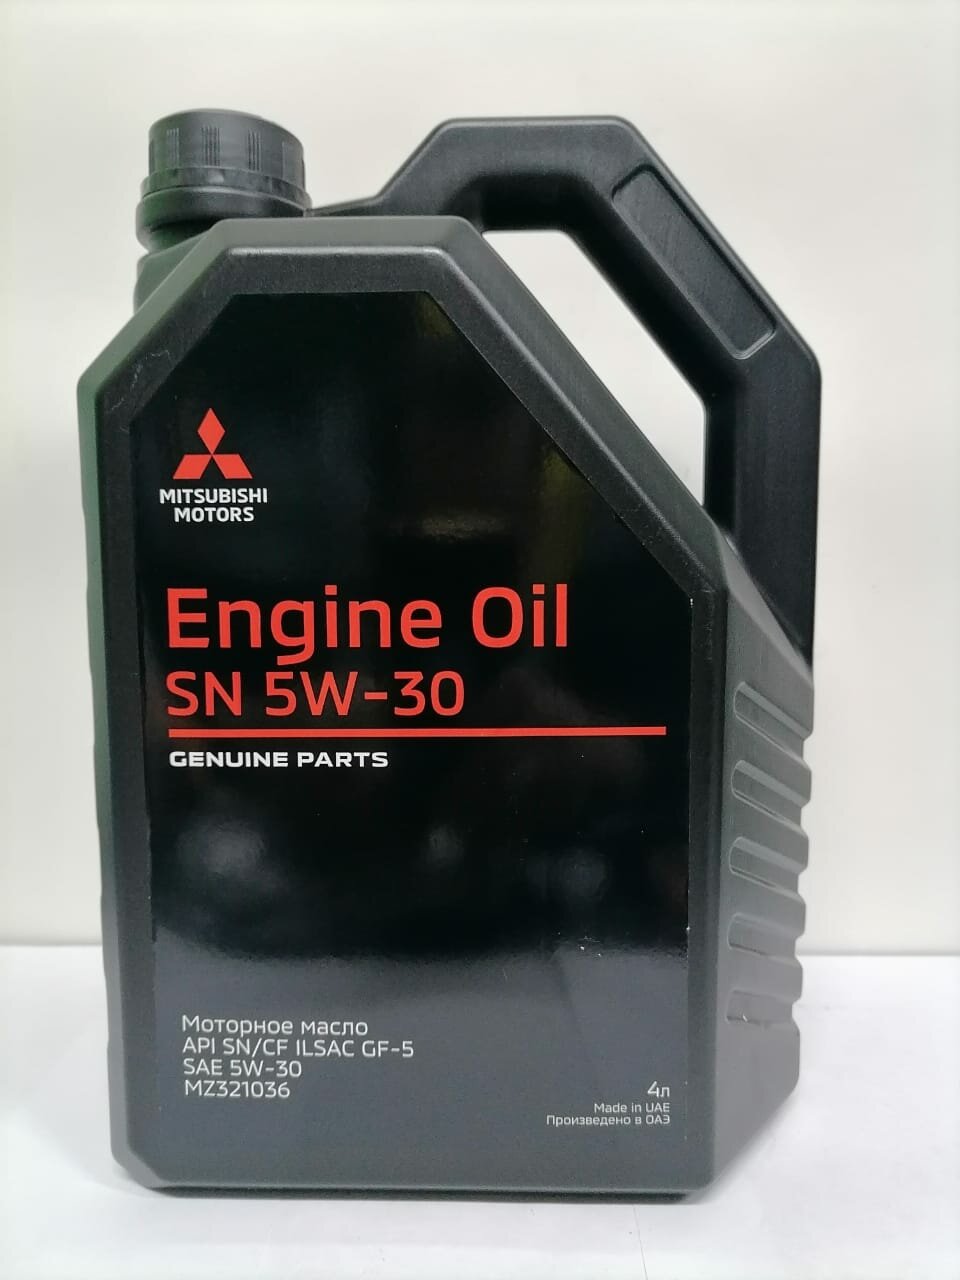 Моторное масло Mitsubishi Motors Engine Oil 5W-30, 4 л, артикул MZ 321036